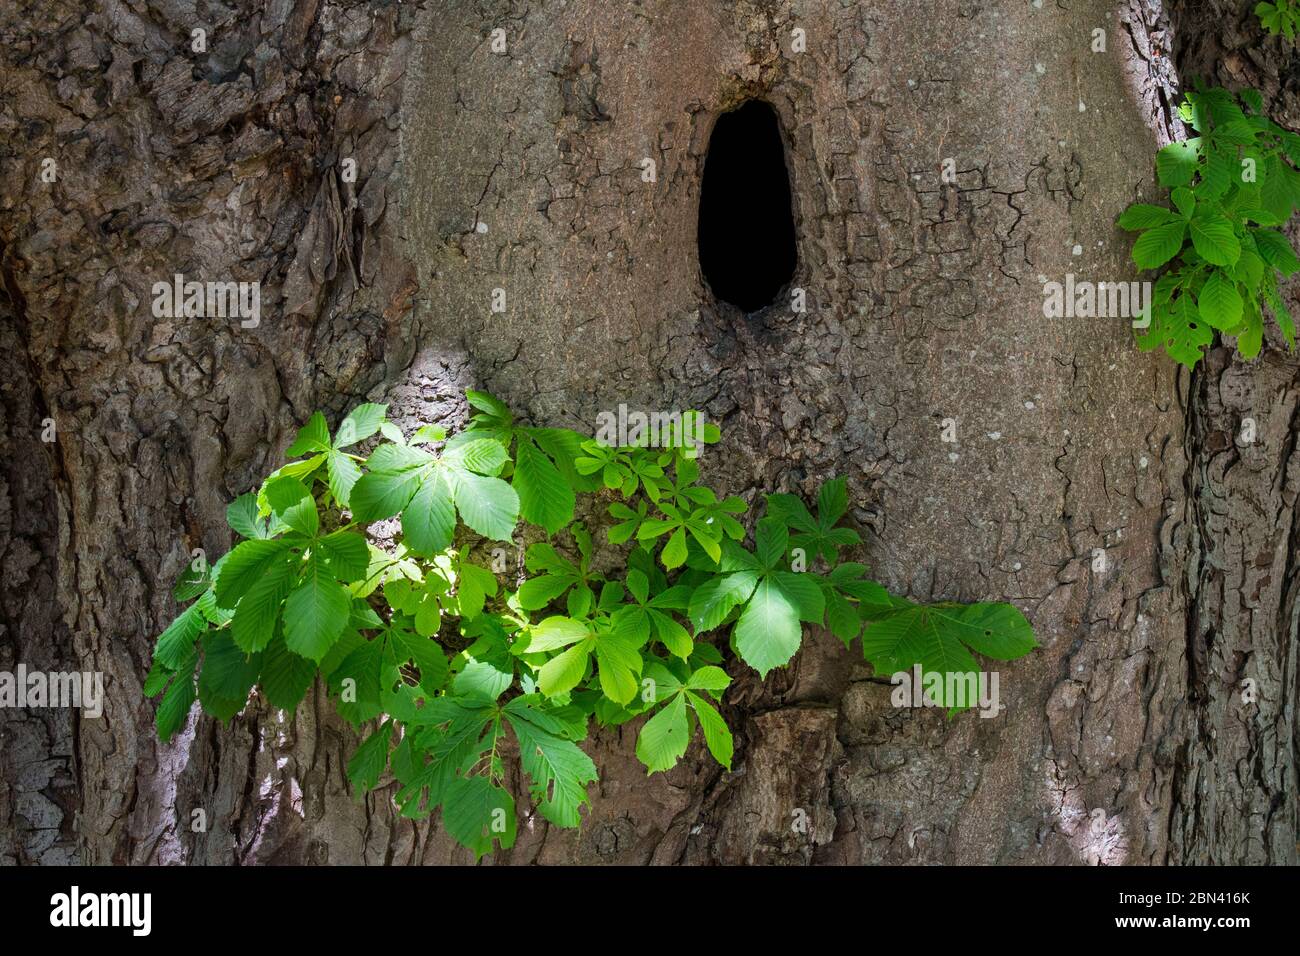 Natürliche Höhle im Stamm der Rosskastanie / Conker Baum (Aesculus hippocastanum) bietet Nistplatz für Vögel, Marder und andere Tiere Stockfoto